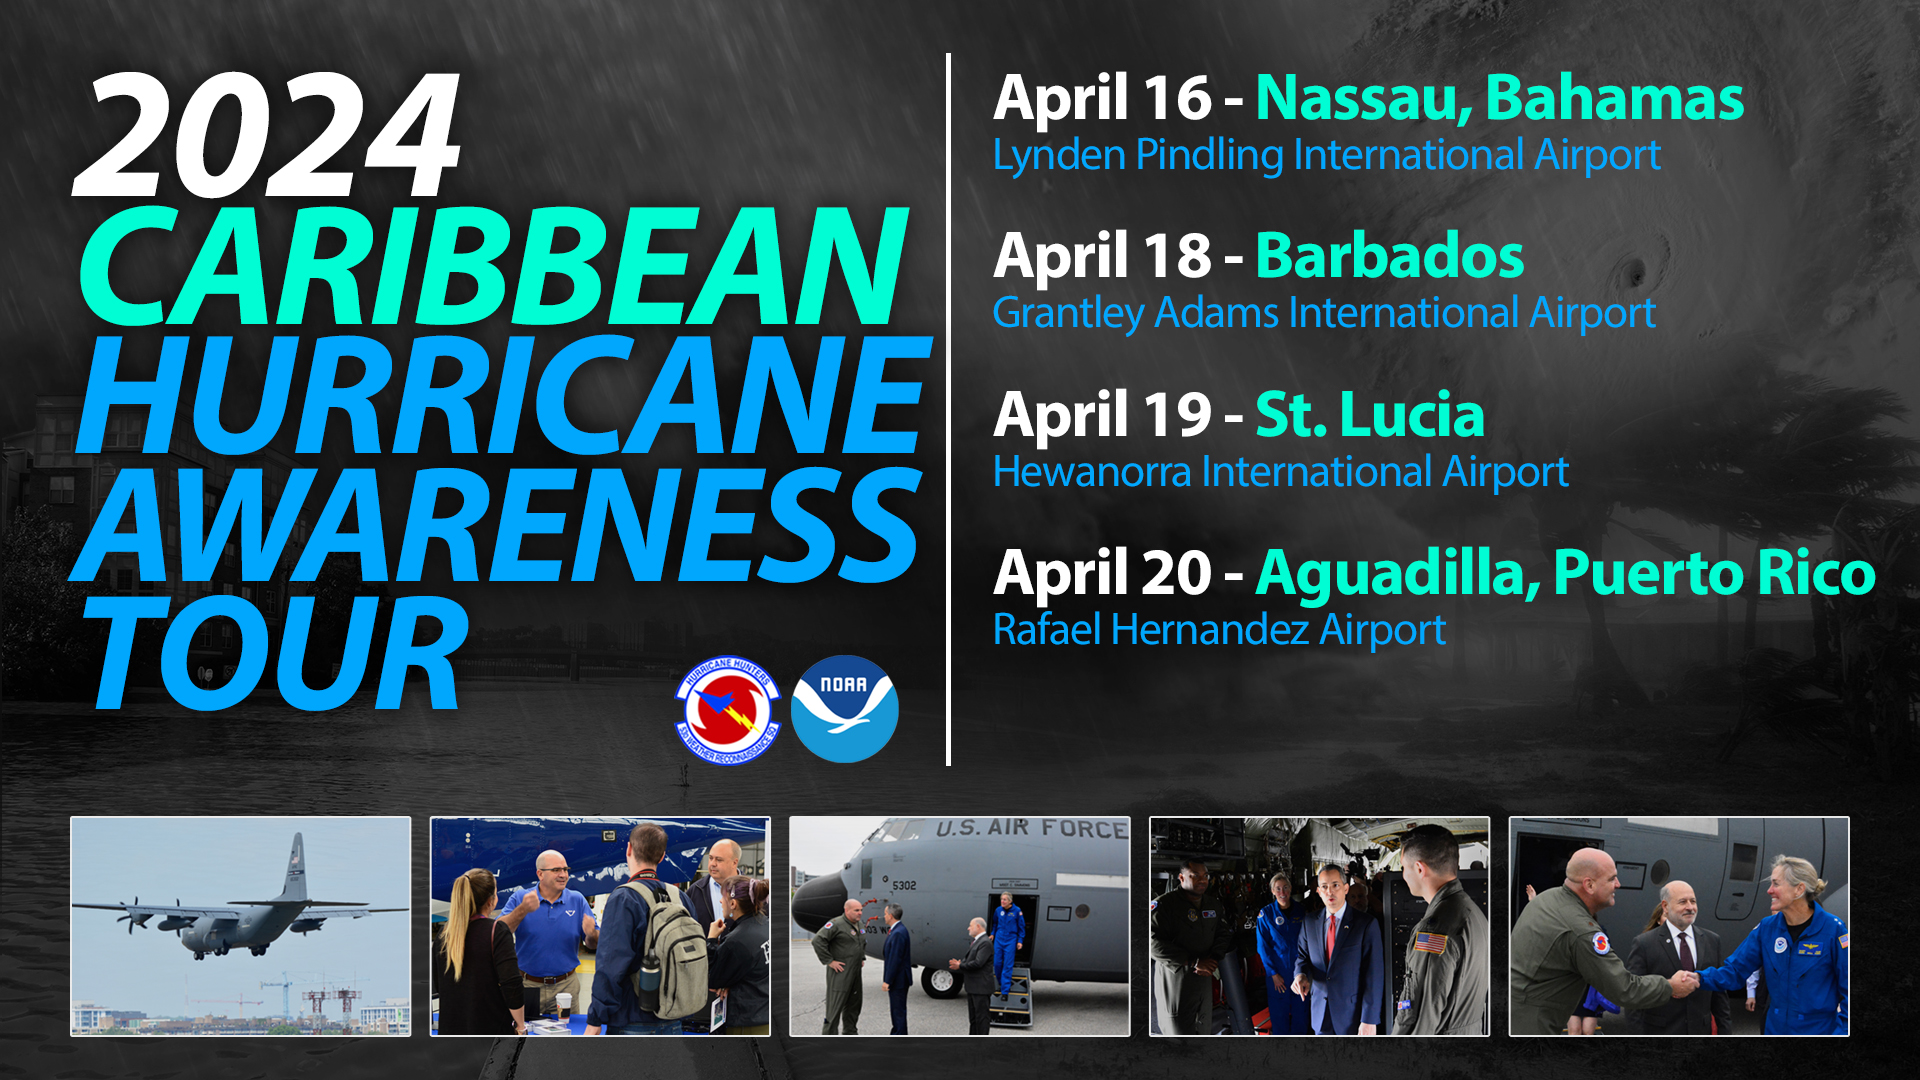  2024 Caribbean Hurricane Awareness Tour- April 16 – Nassau, Bahamas, April 18 – Barbados, April 19 – St.Lucia, April 20 – Aguadilla, Puerto Rico